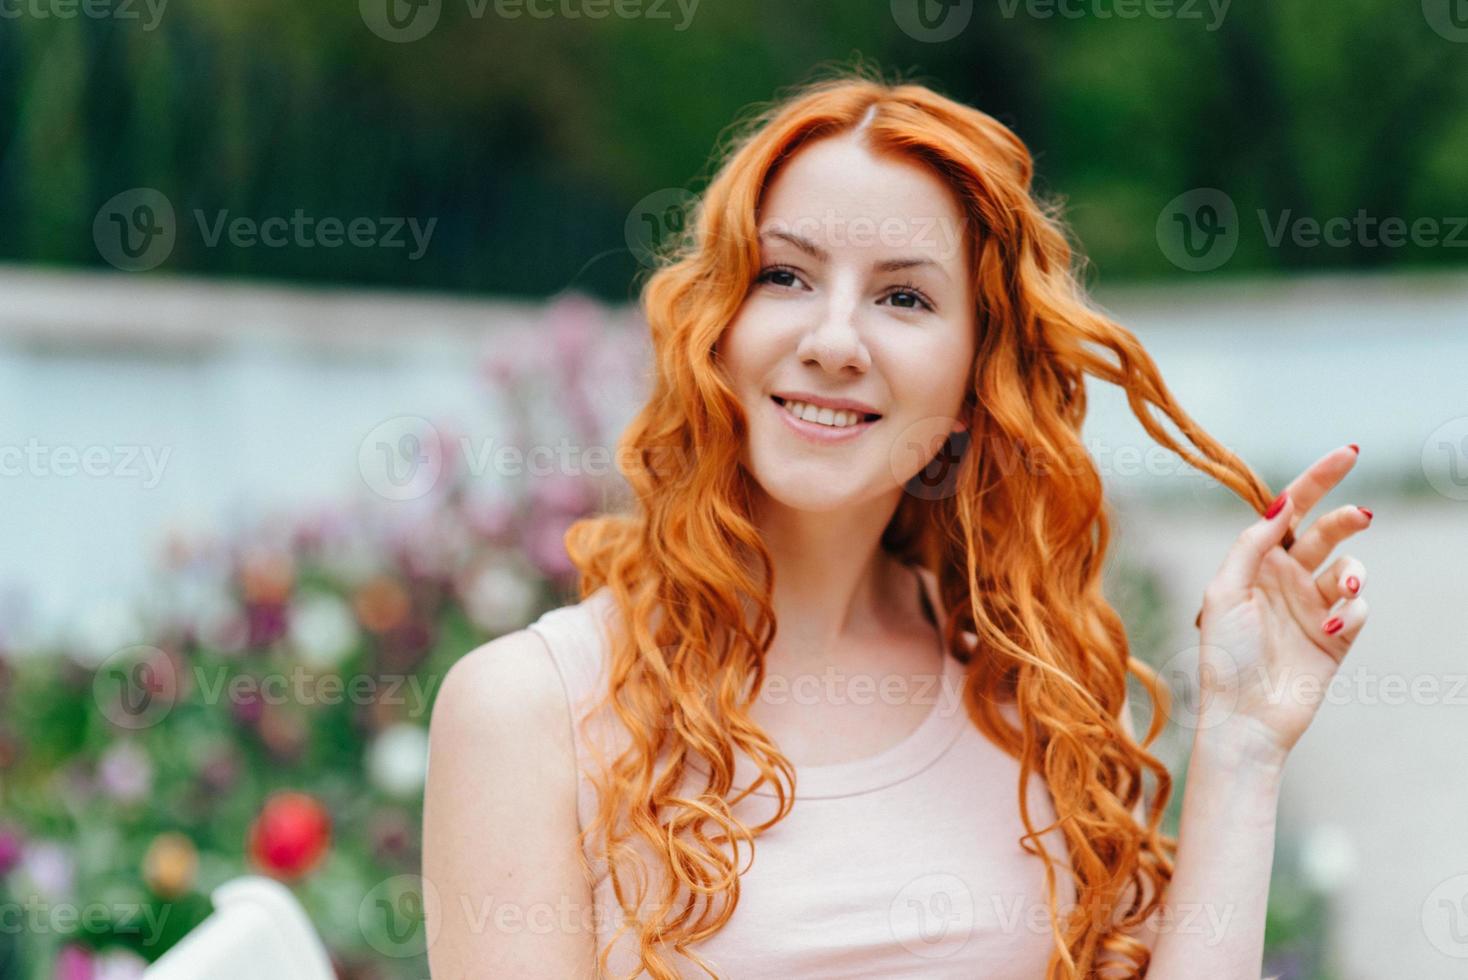 giovane ragazza dai capelli rossi che cammina in un parco tra alberi e oggetti architettonici foto